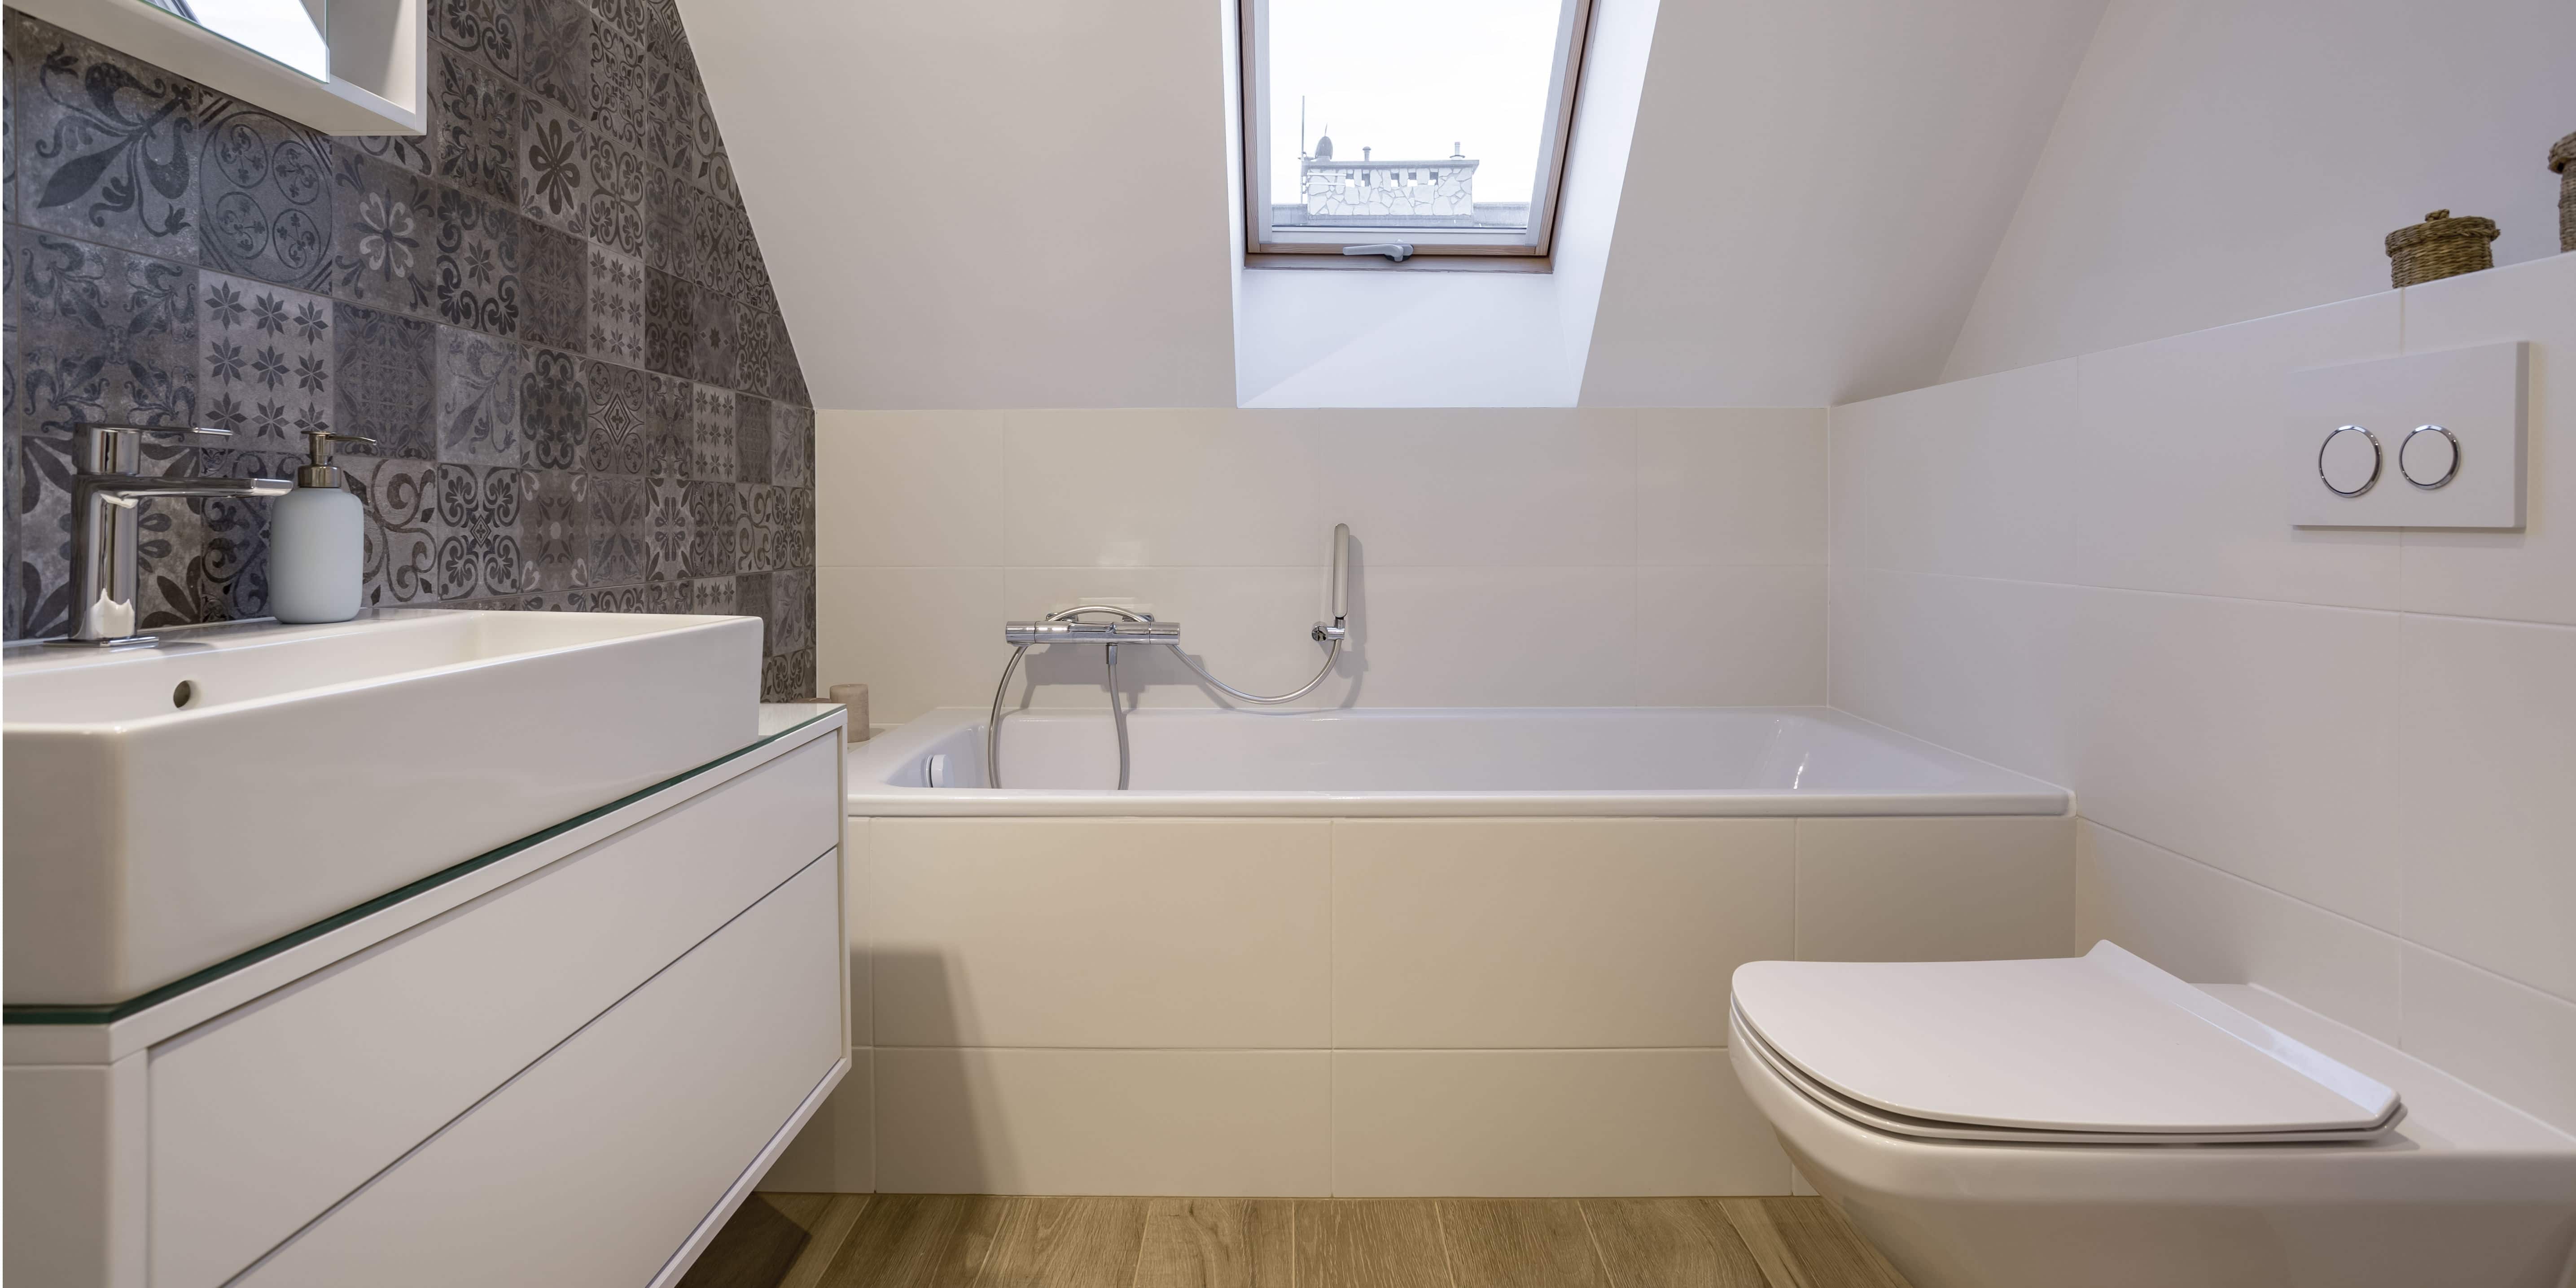 De neiging hebben Lui maniac Nieuwe badkamer prijs: € 3.500 à 25.000 [+ Besparingstips]